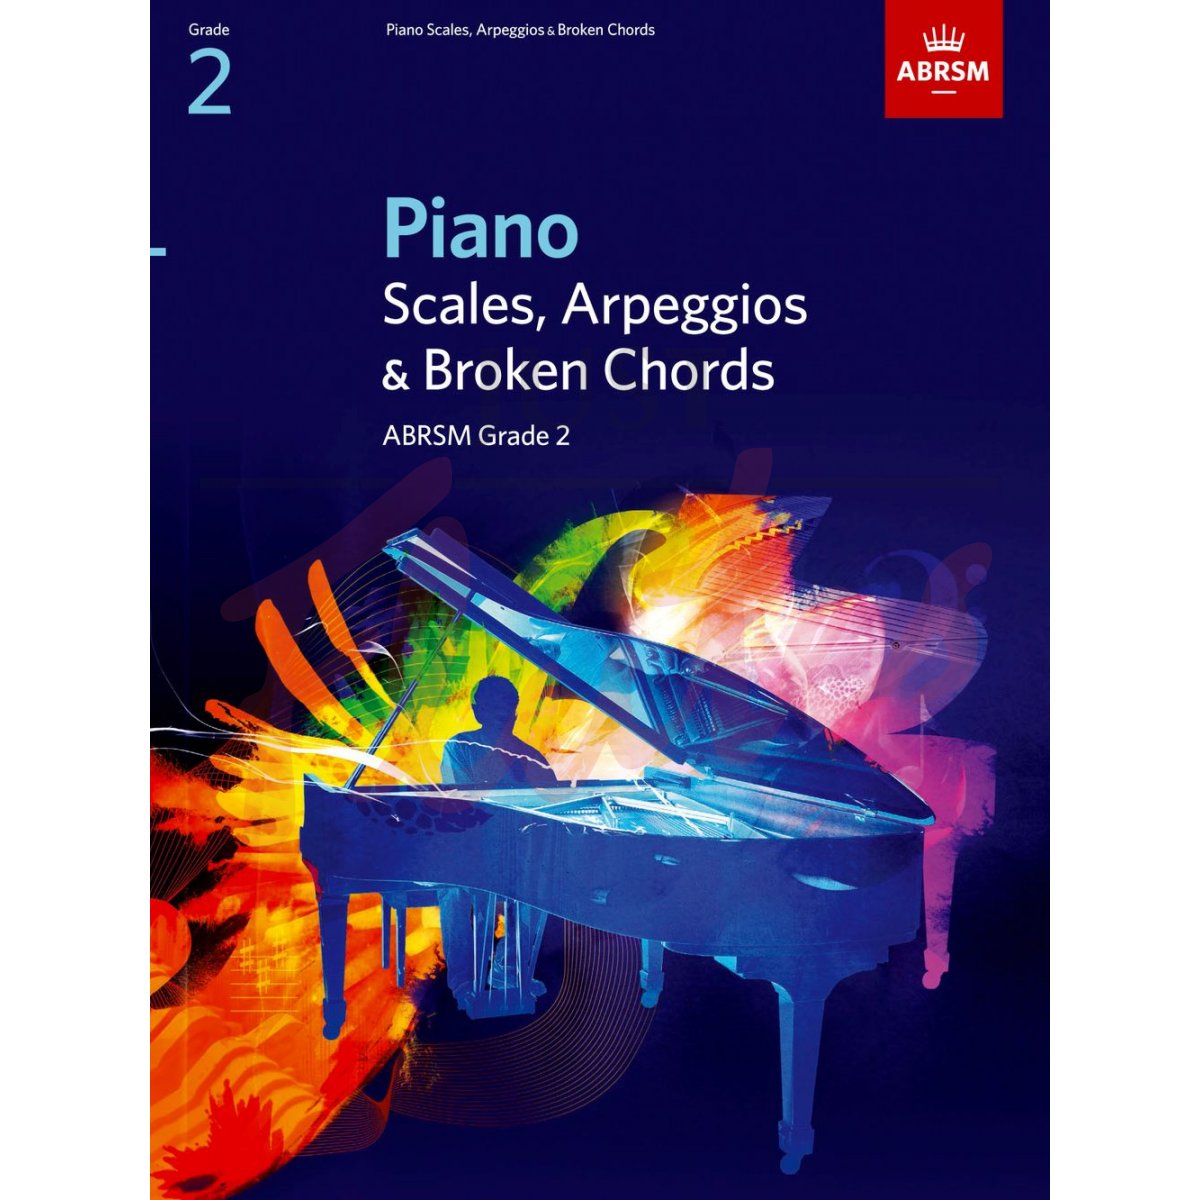 Piano Scales and Arpeggios Grade 2 (2009 to 2019)